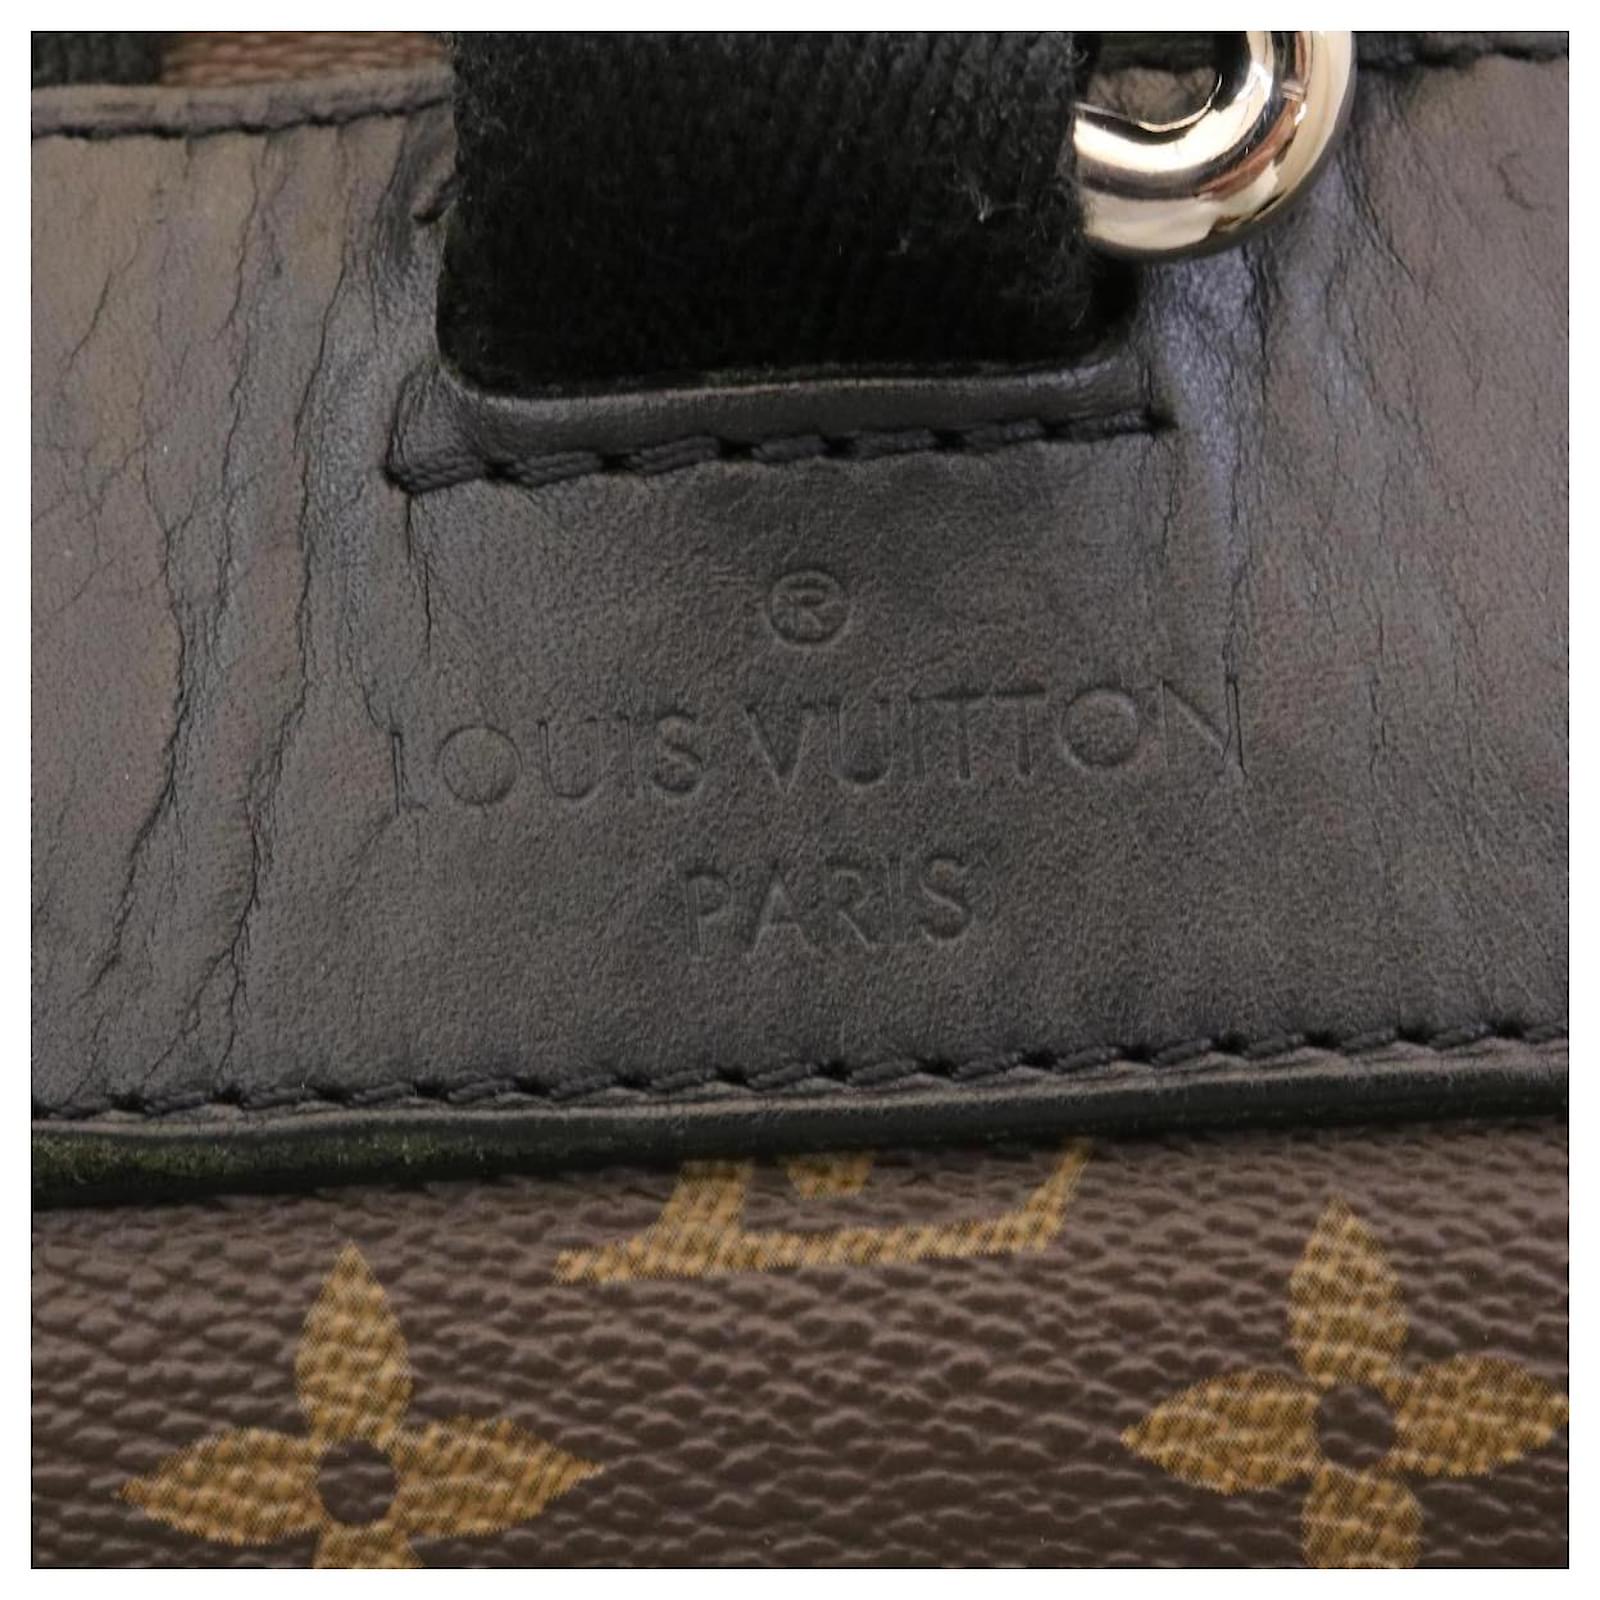 Shop Louis Vuitton Backpacks (M43735) by luxurysuite